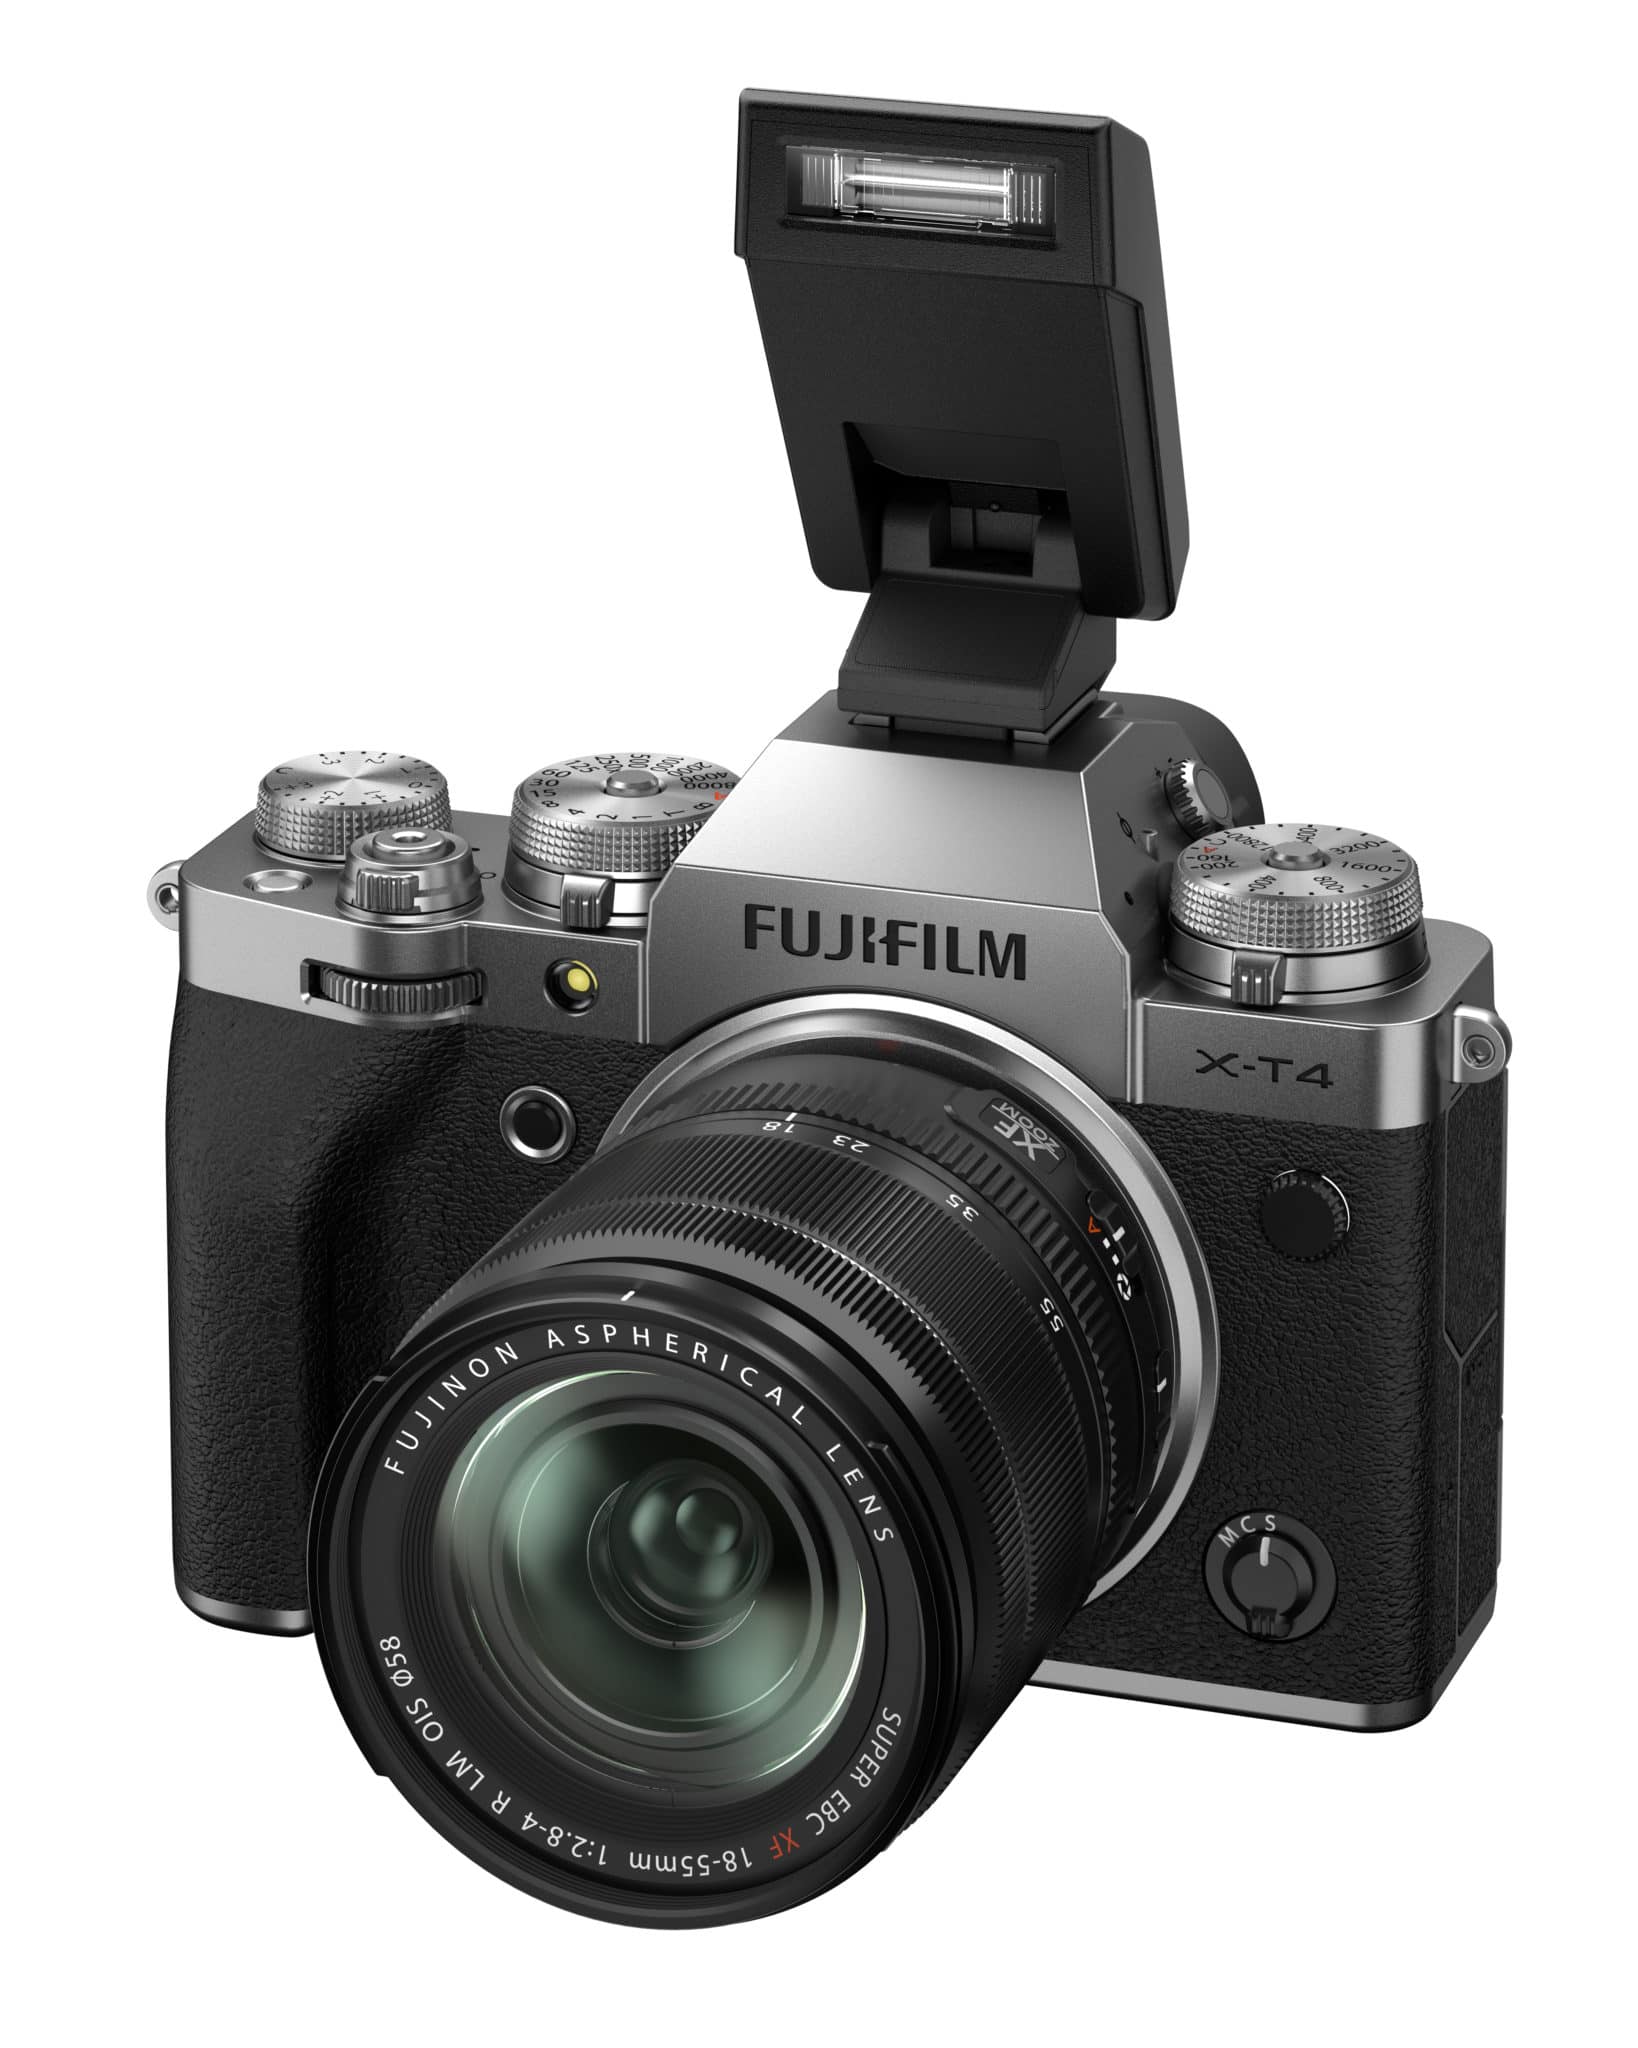 Viena con la Fujifilm XT4: análisis, imágenes, ejemplos, IBIS y